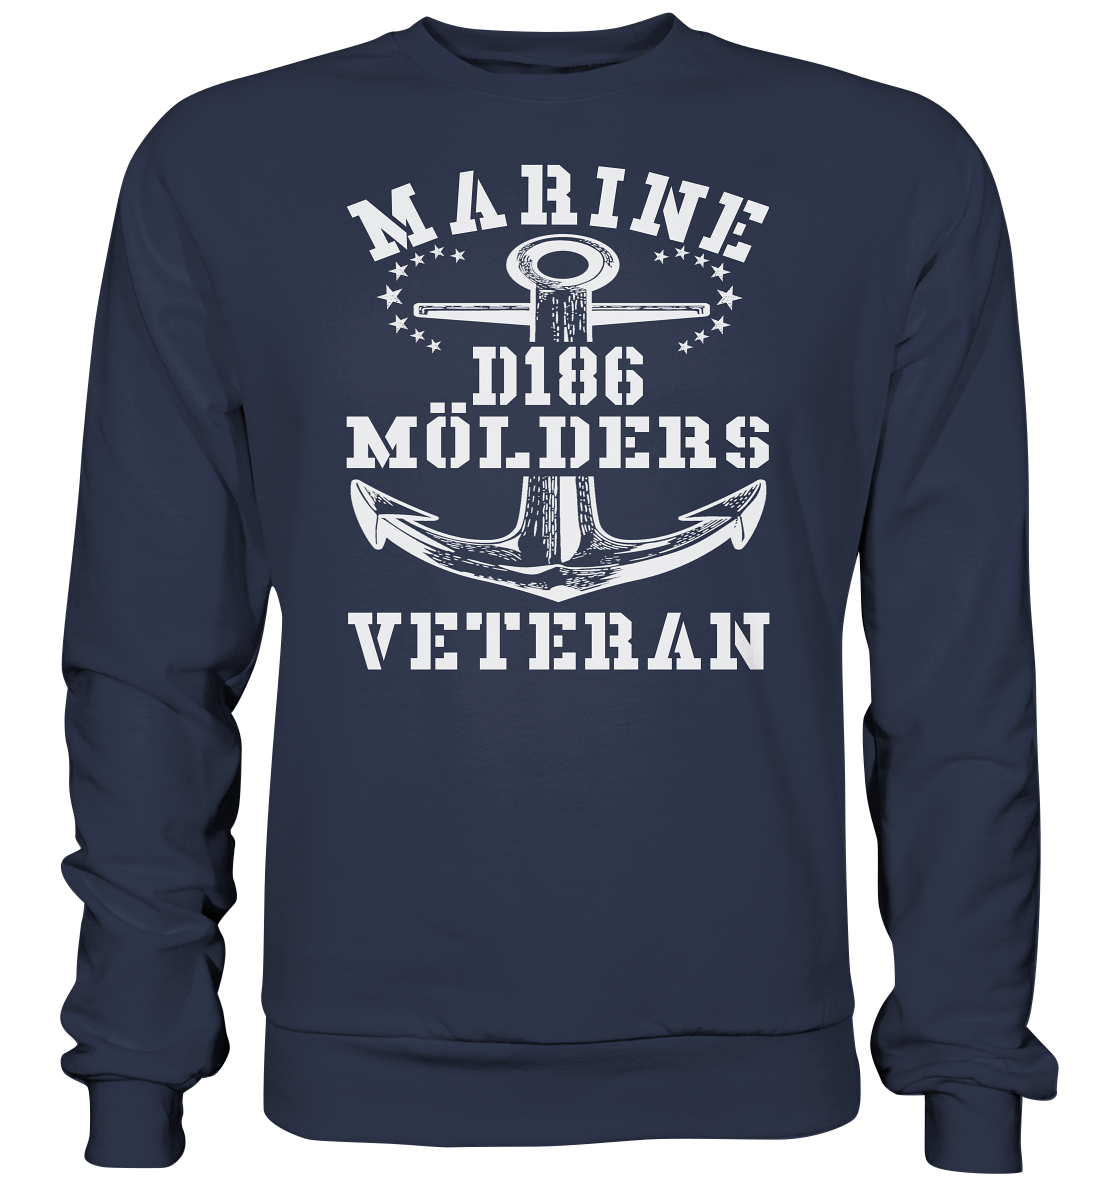 Zerstörer D186 MÖLDERS Marine Veteran - Premium Sweatshirt